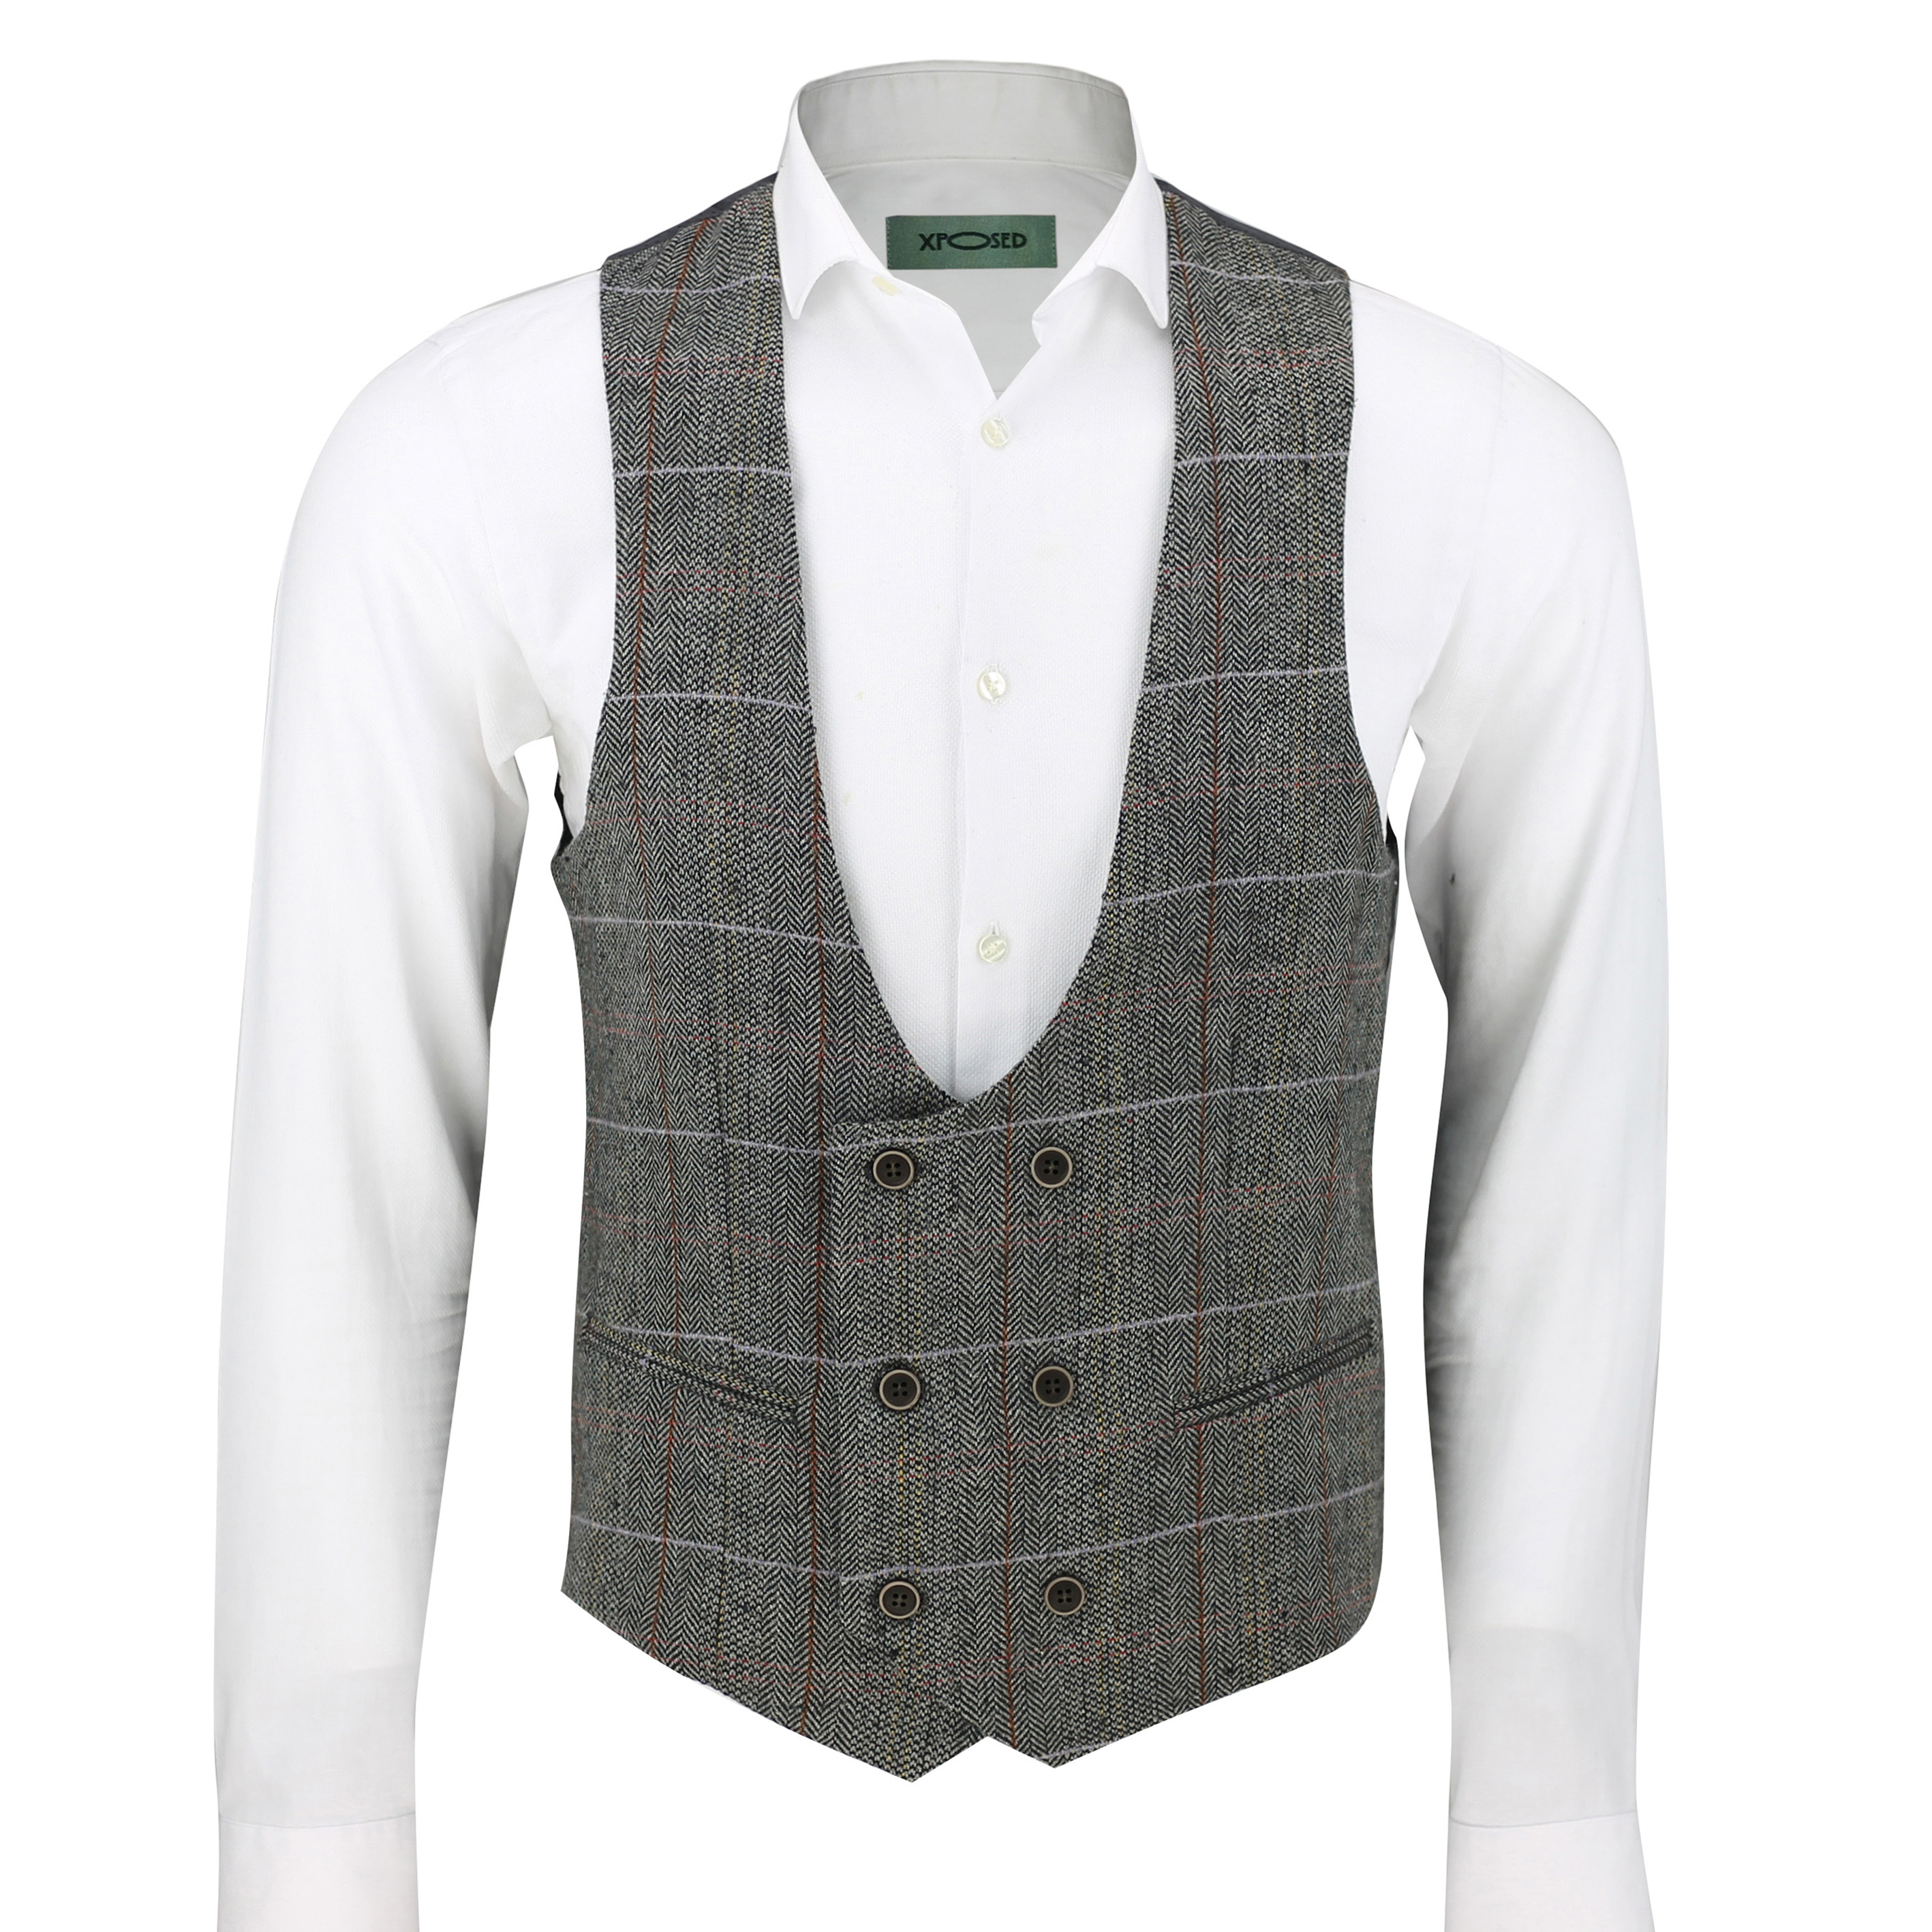 New Mens Tweed Waistcoat Herringbone Check Velvet Trim Vintage Formal Fit Vest 